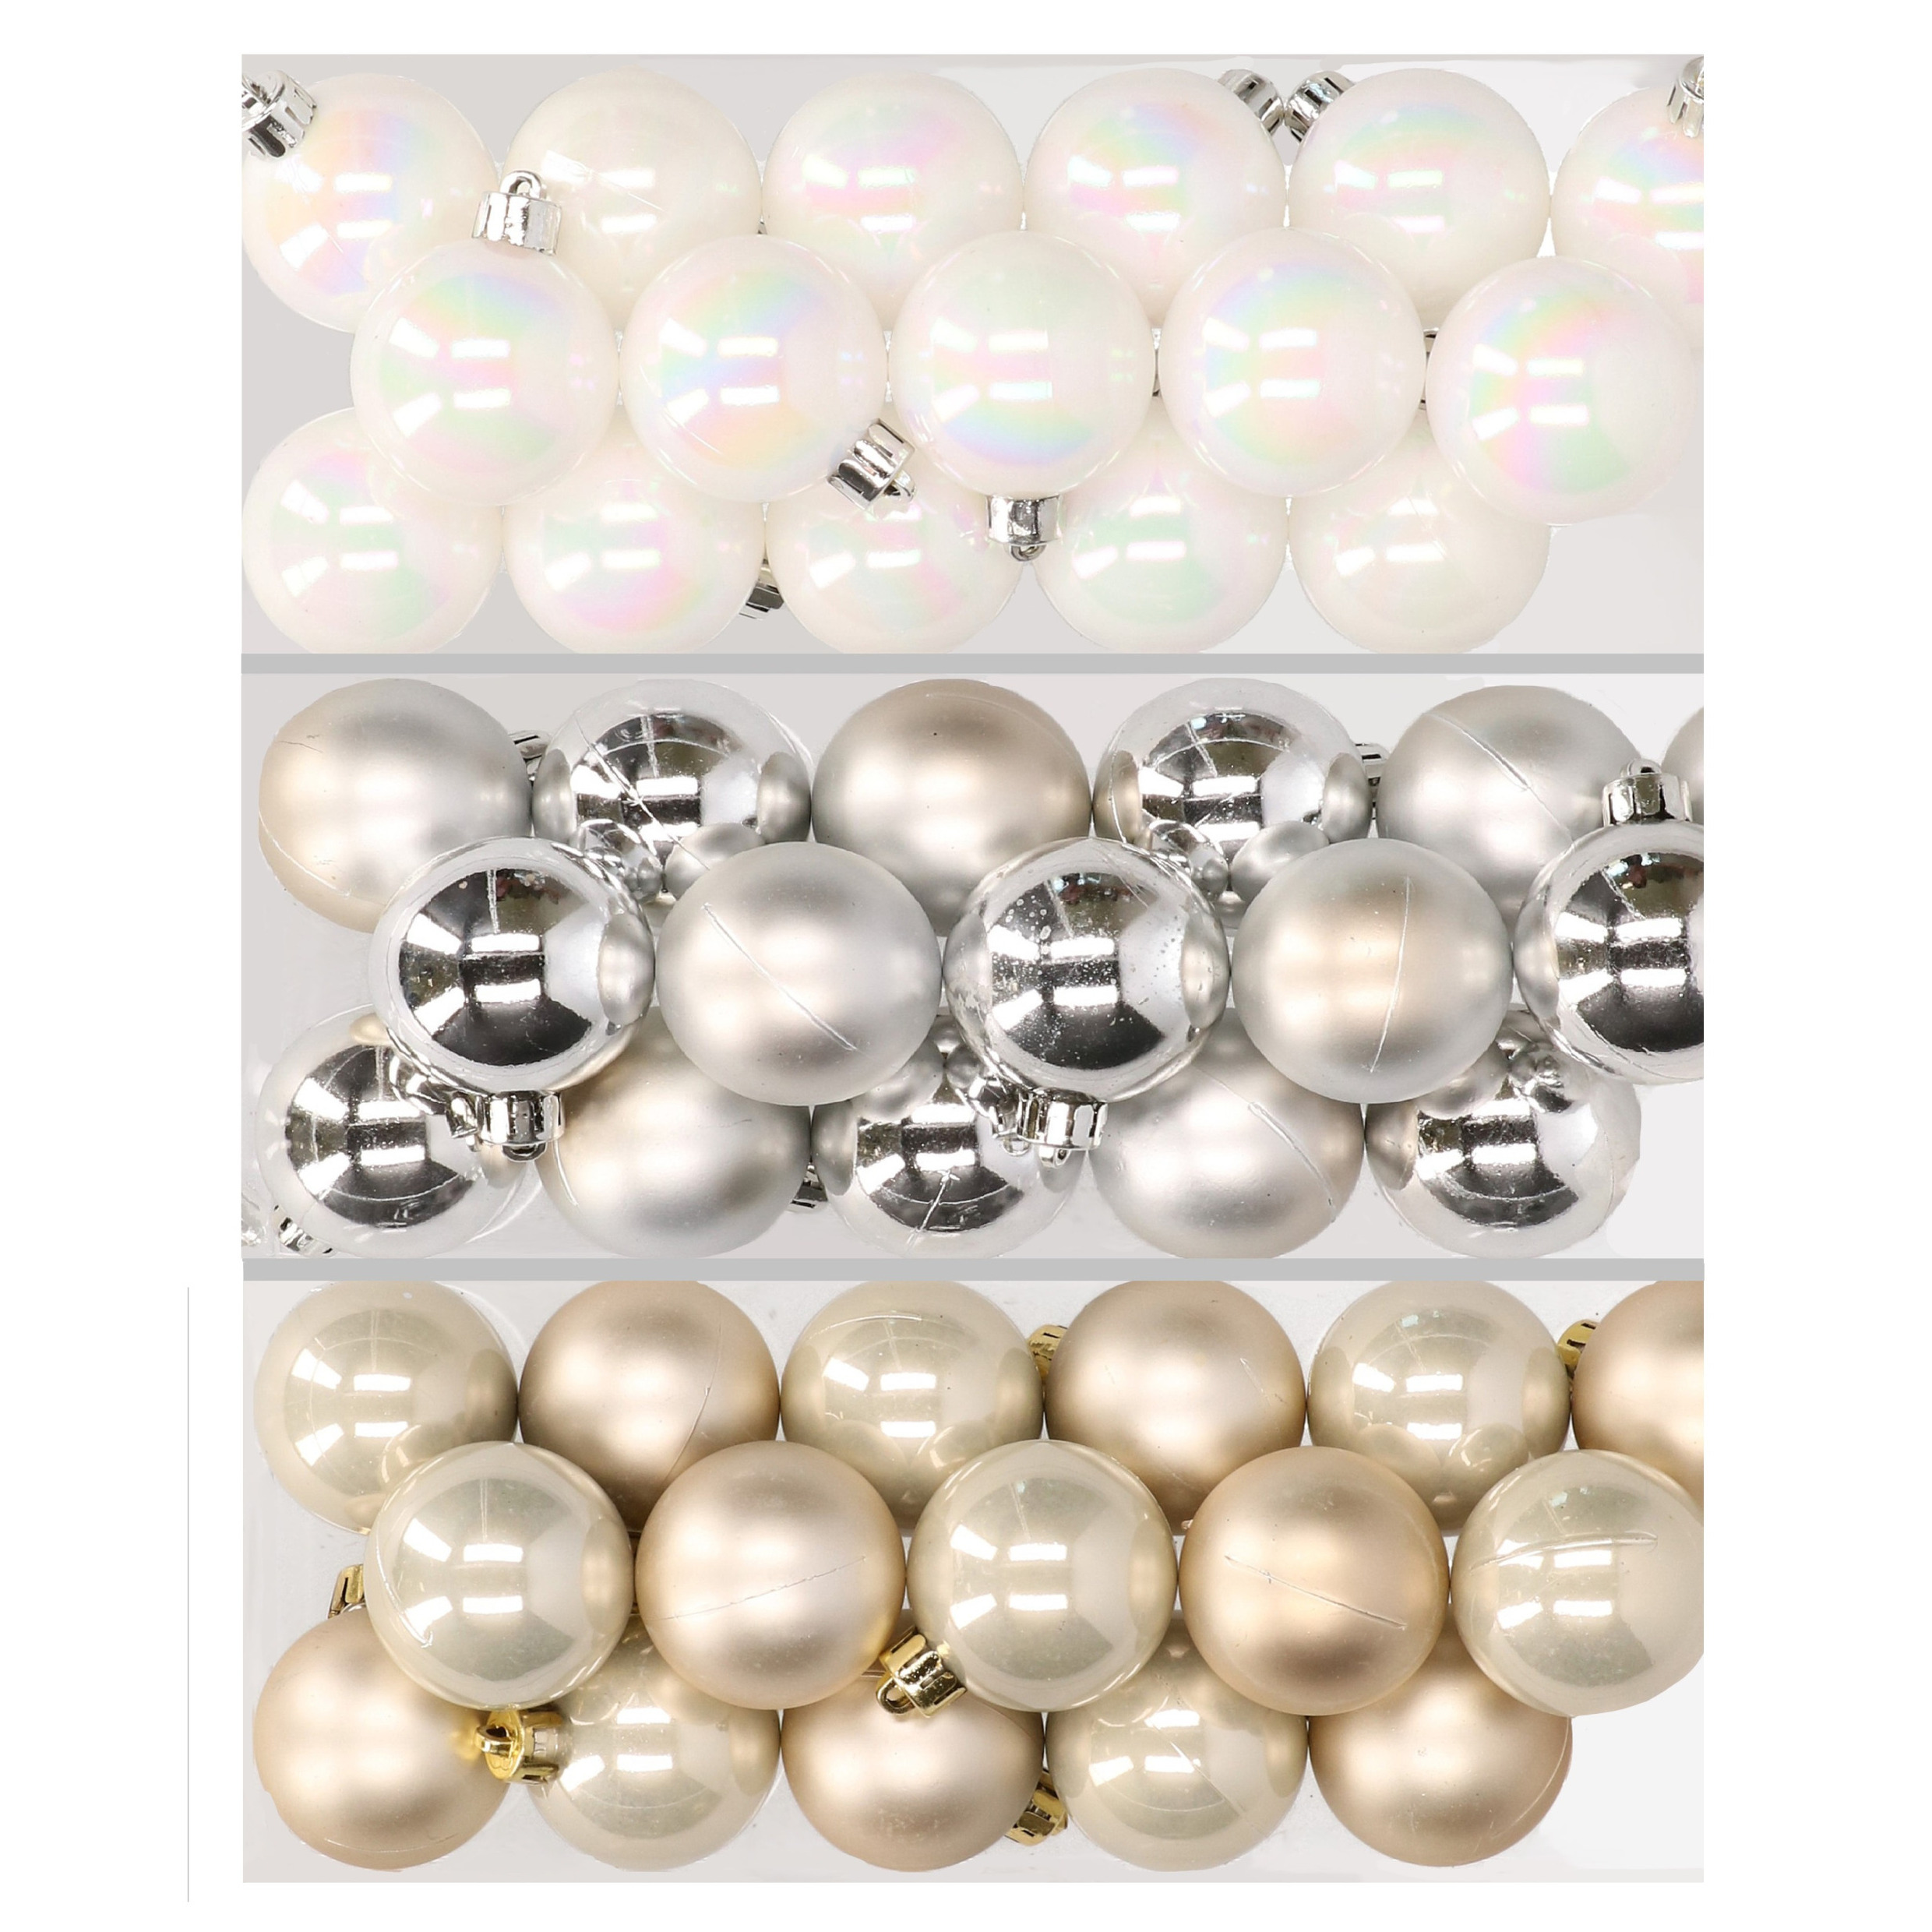 48x stuks kunststof kerstballen mix van parelmoer wit, zilver en champagne 4 cm